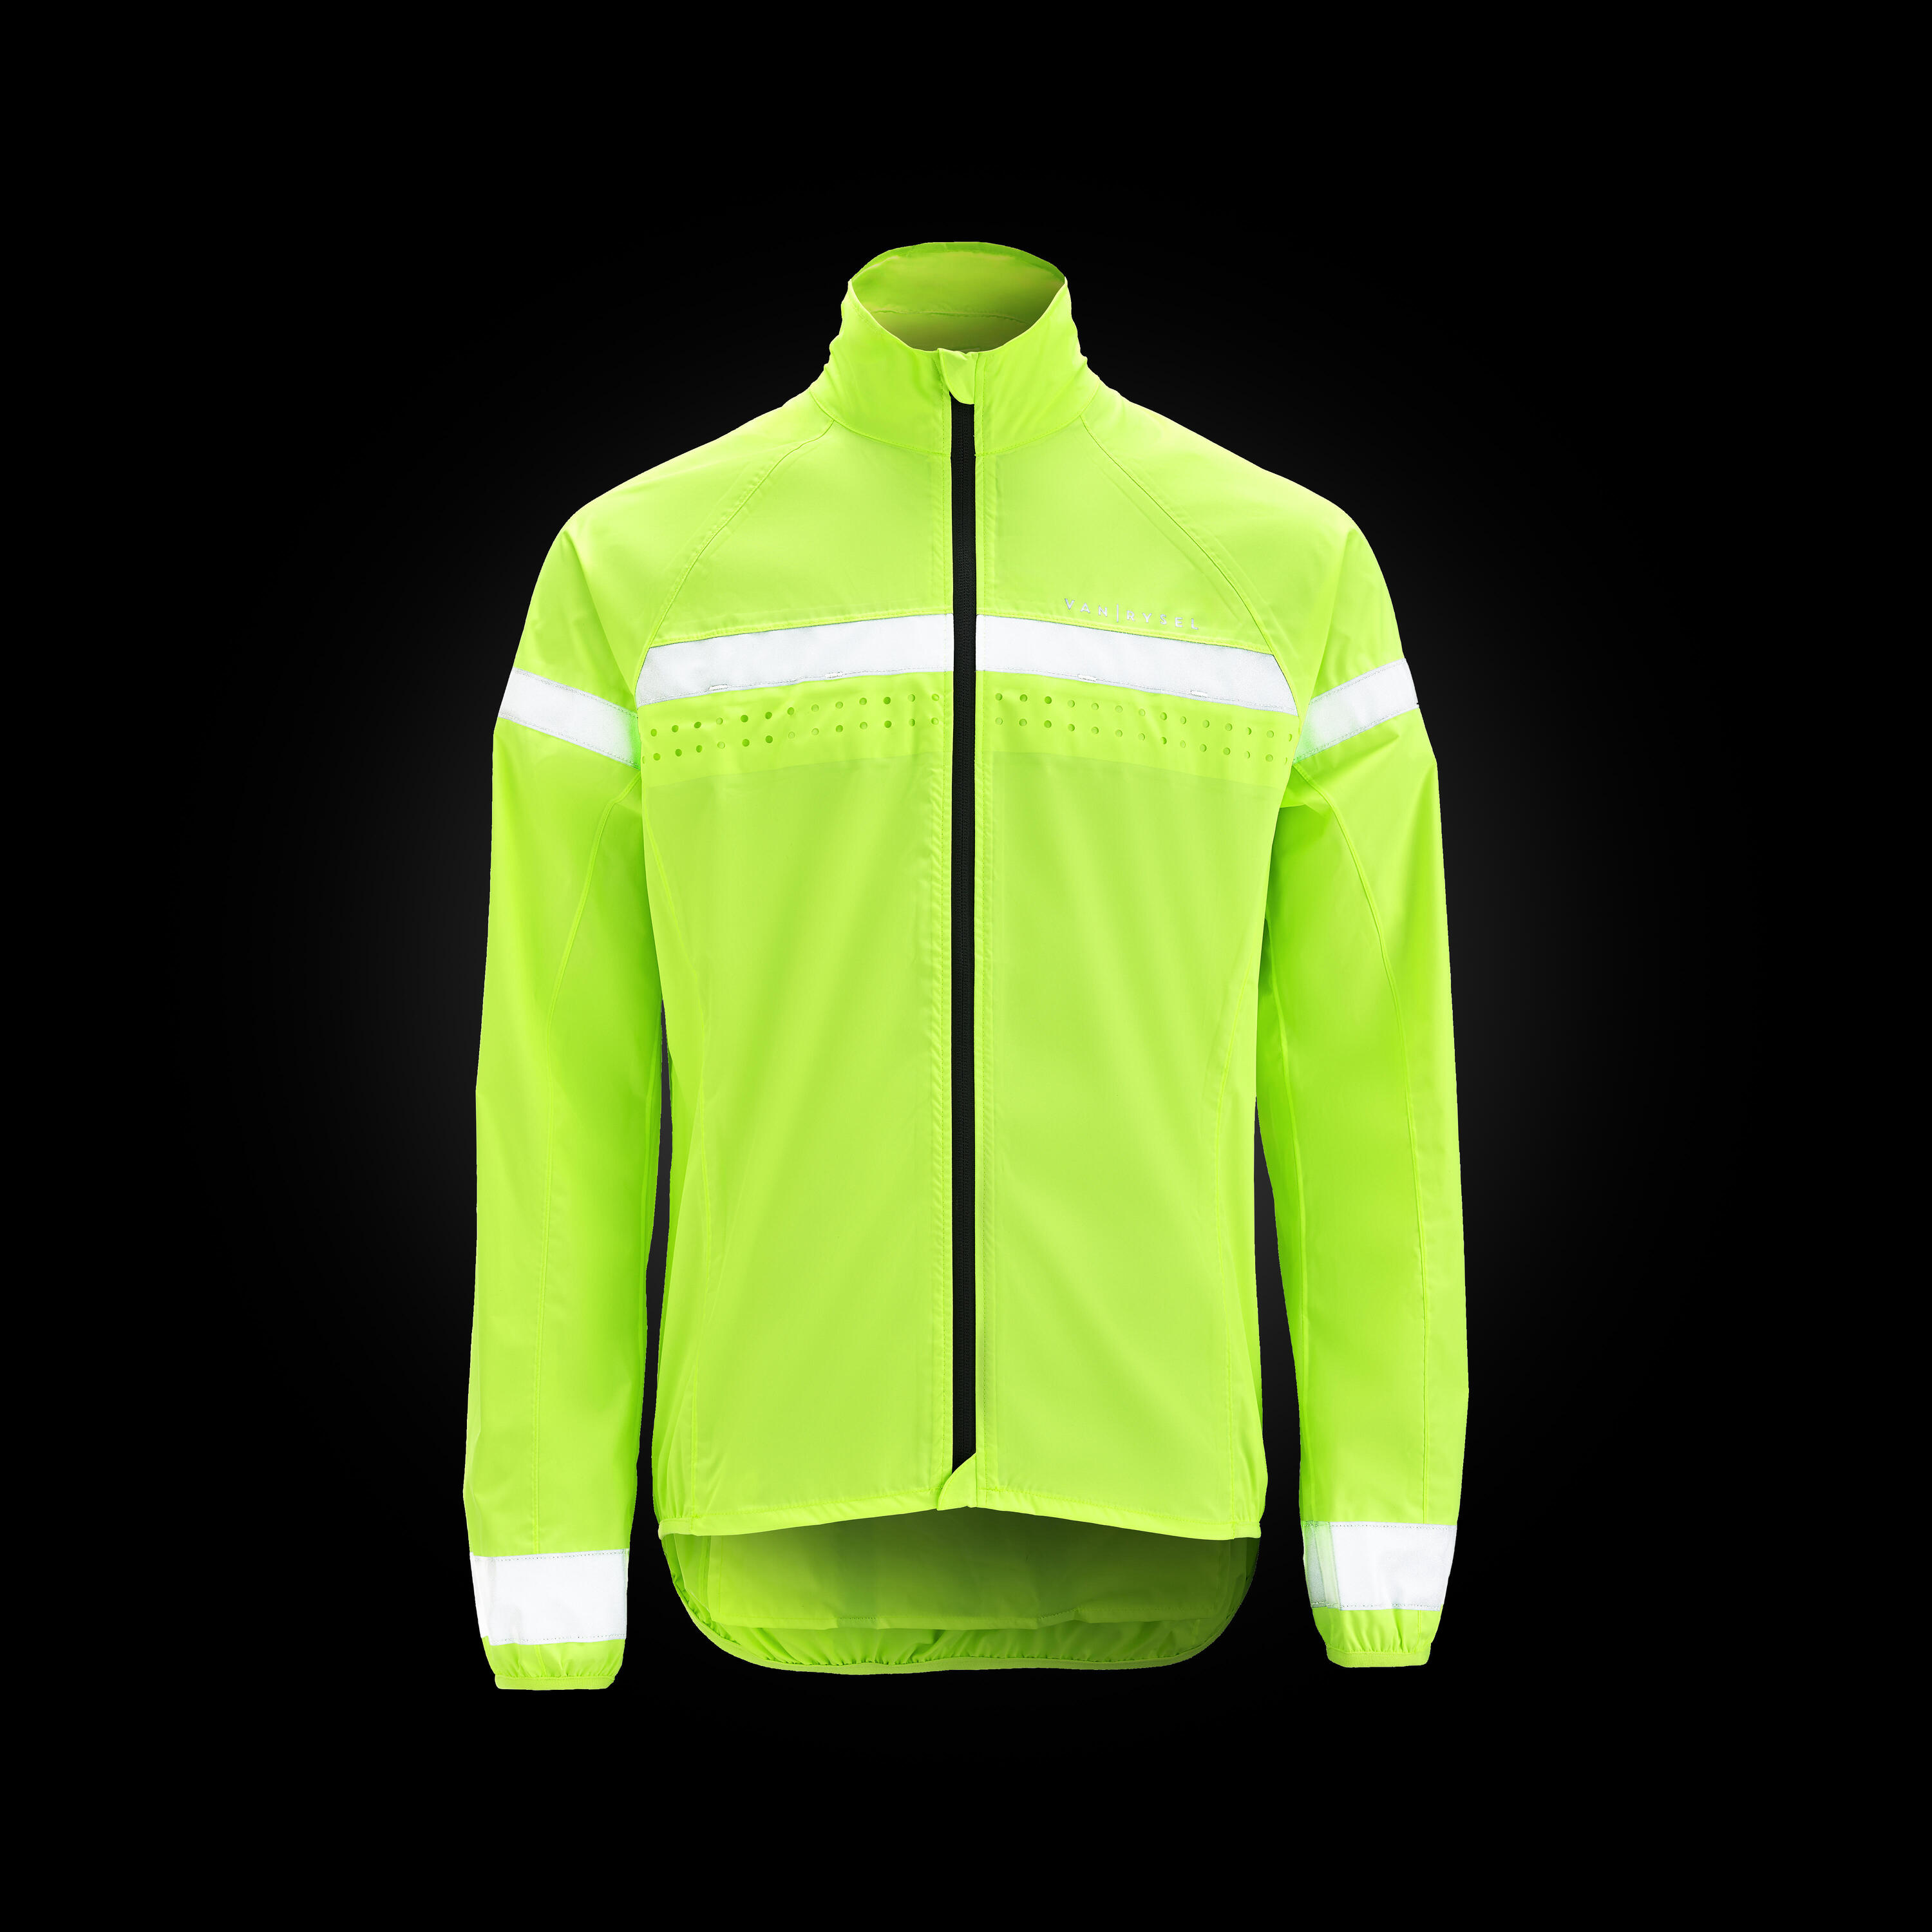 Men's Long-Sleeved Showerproof Road Cycling Jacket RC 120 Visible EN11353 2/6